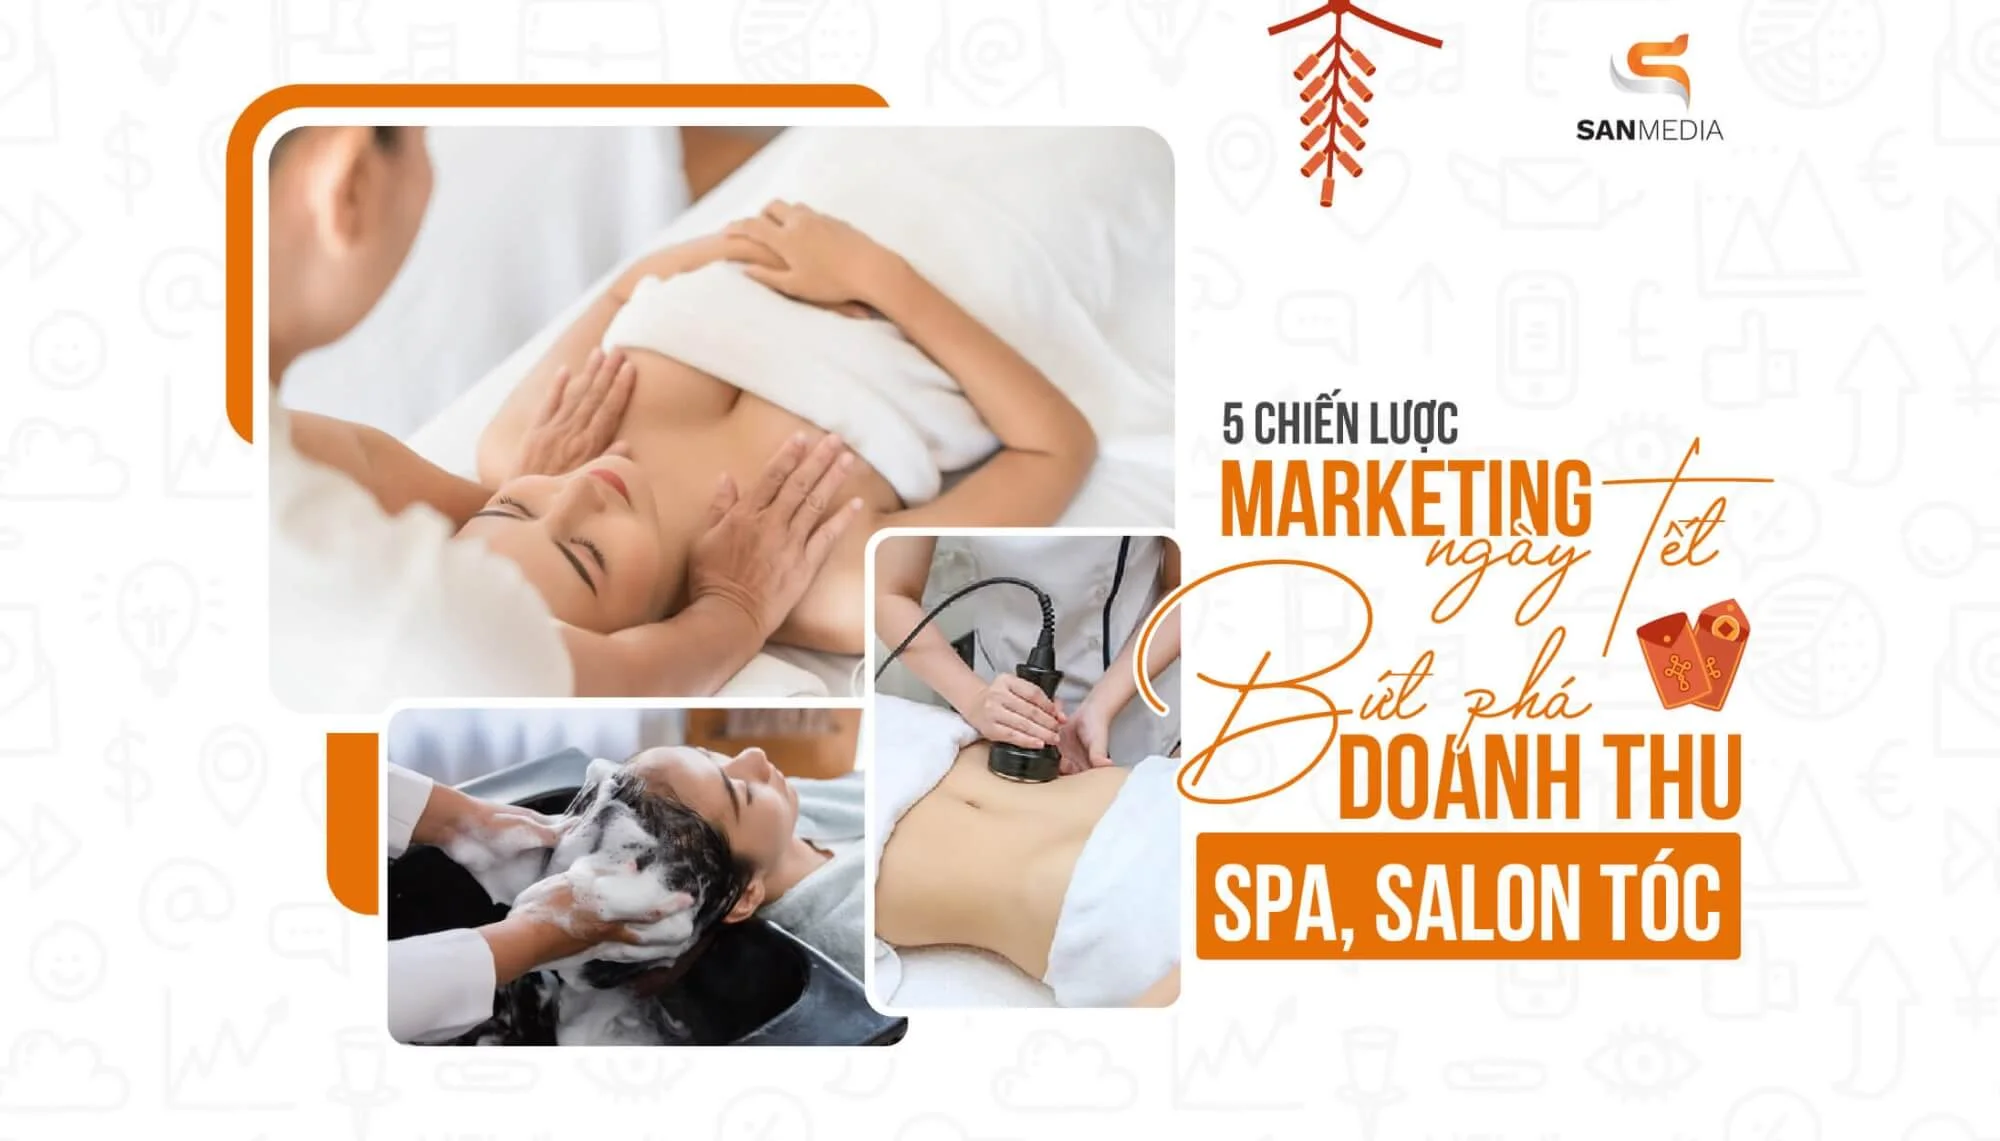 5 Chiến Lược Marketing Ngày Tết Giúp Bứt Phá Doanh Thu Cho Spa, Salon Tóc 